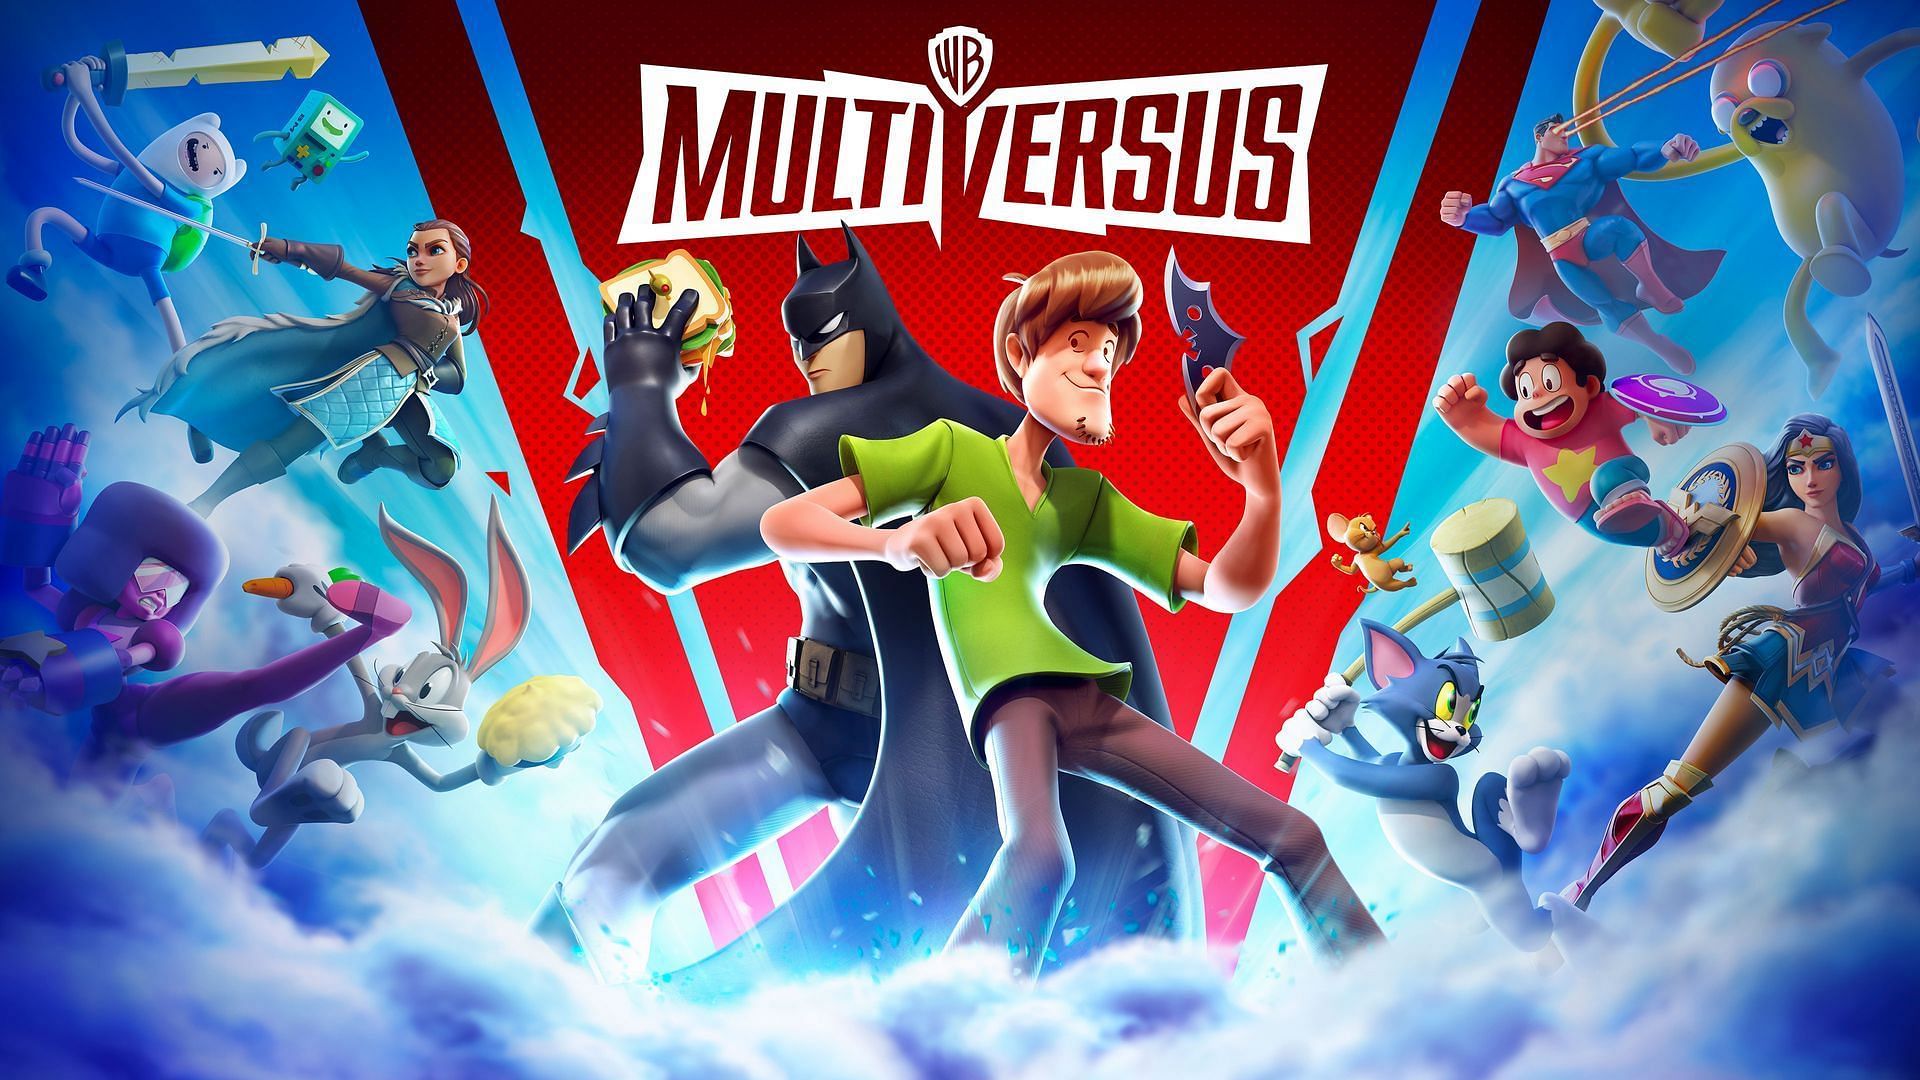 Official artwork for MultiVersus (Image via Warner Bros)